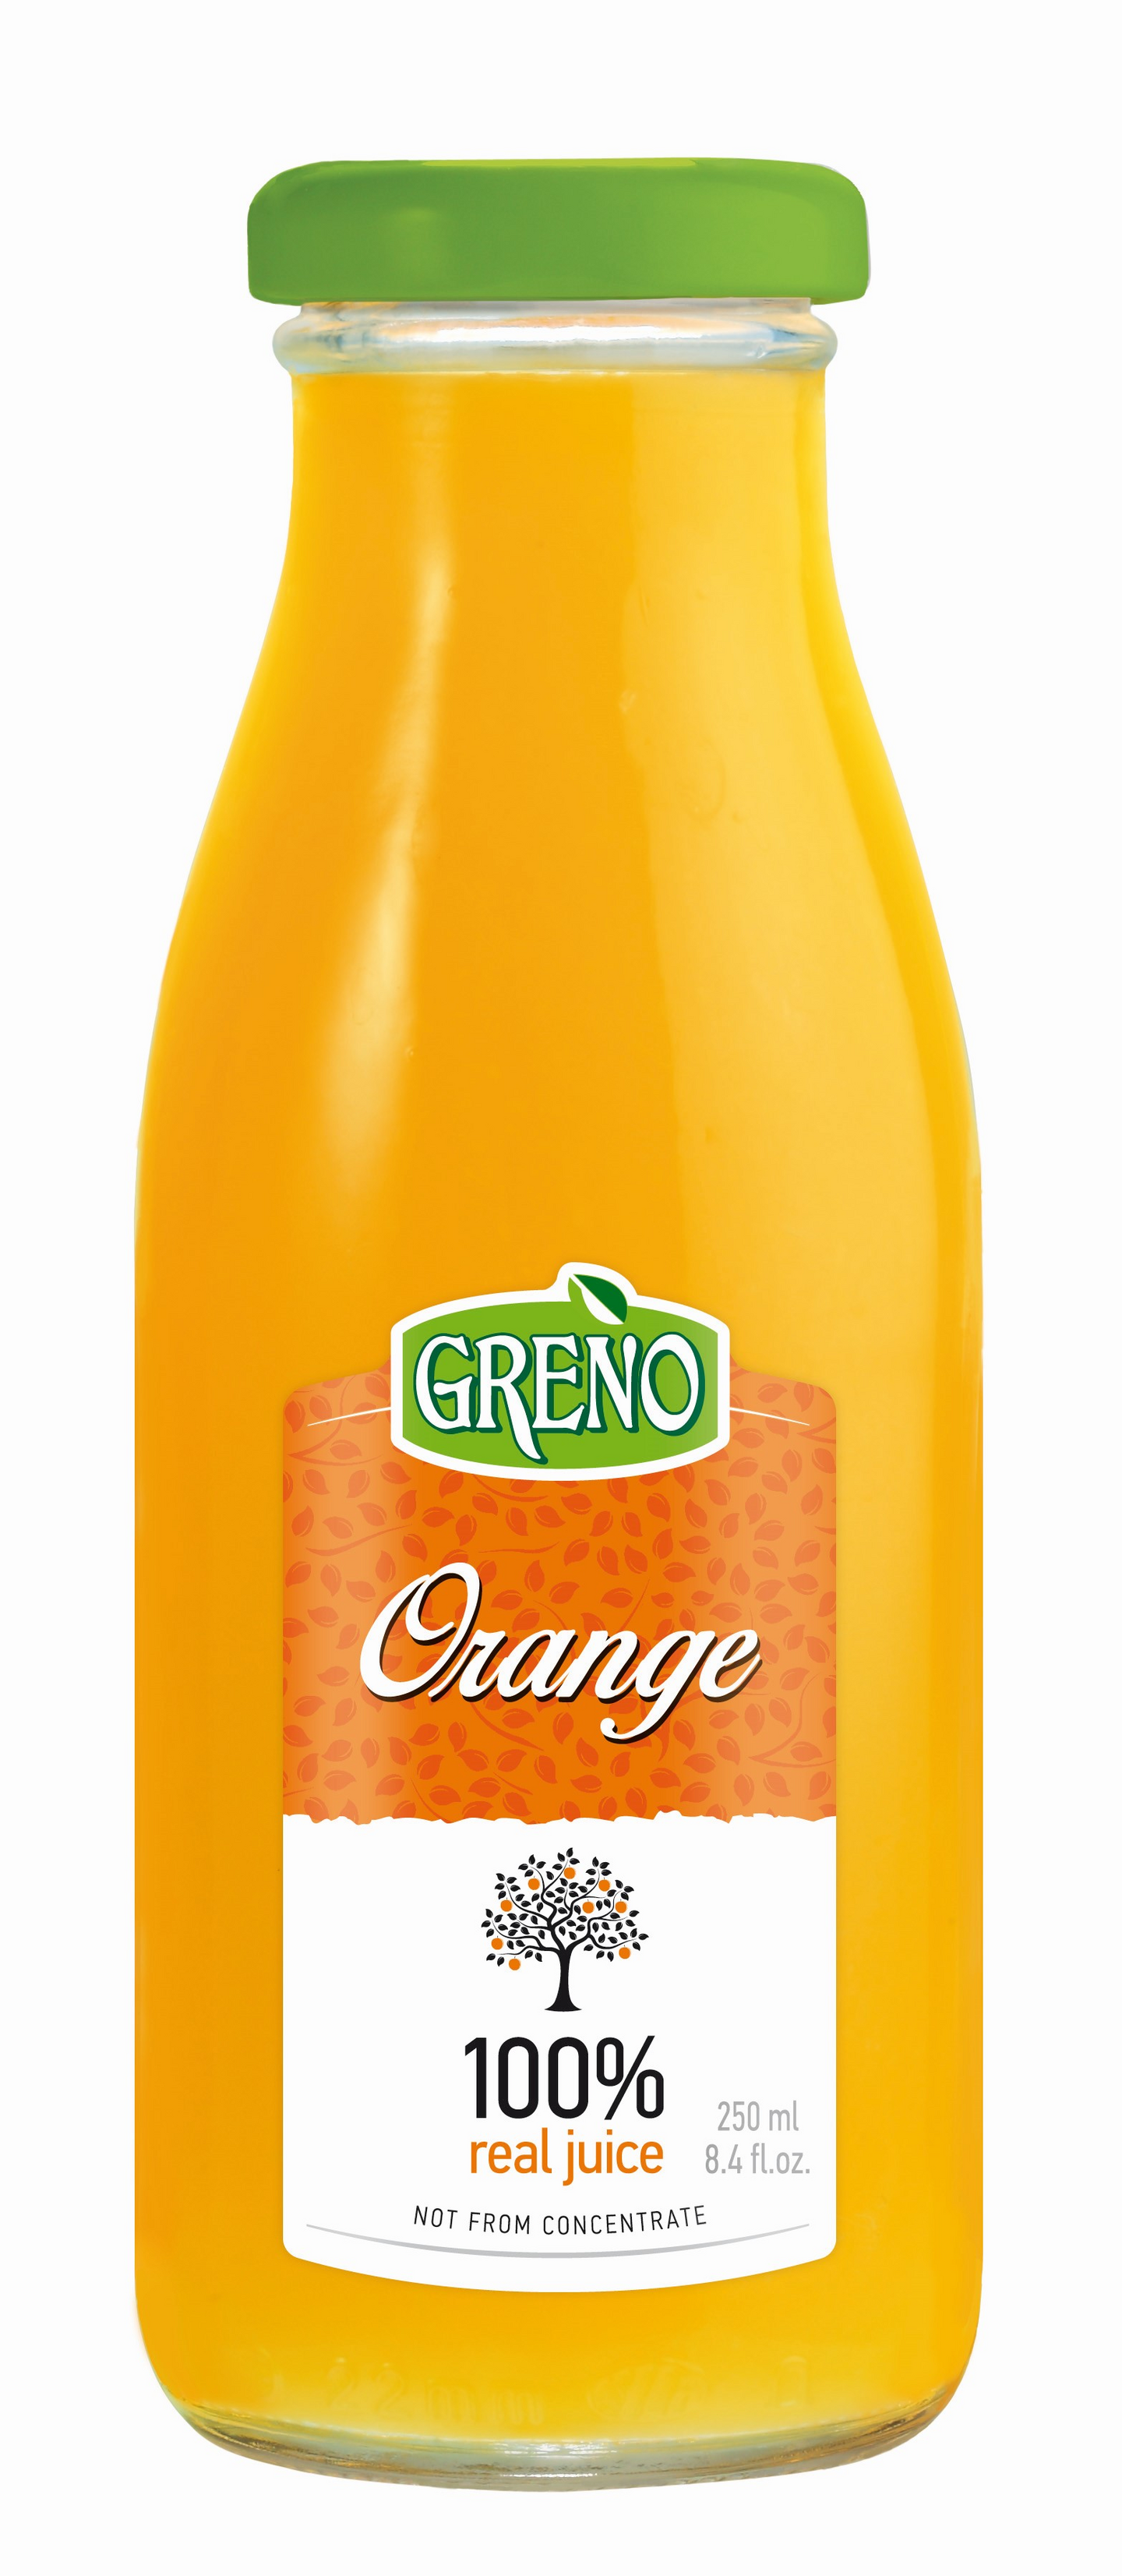 Greno Appelsiinitäysmehu 250ml